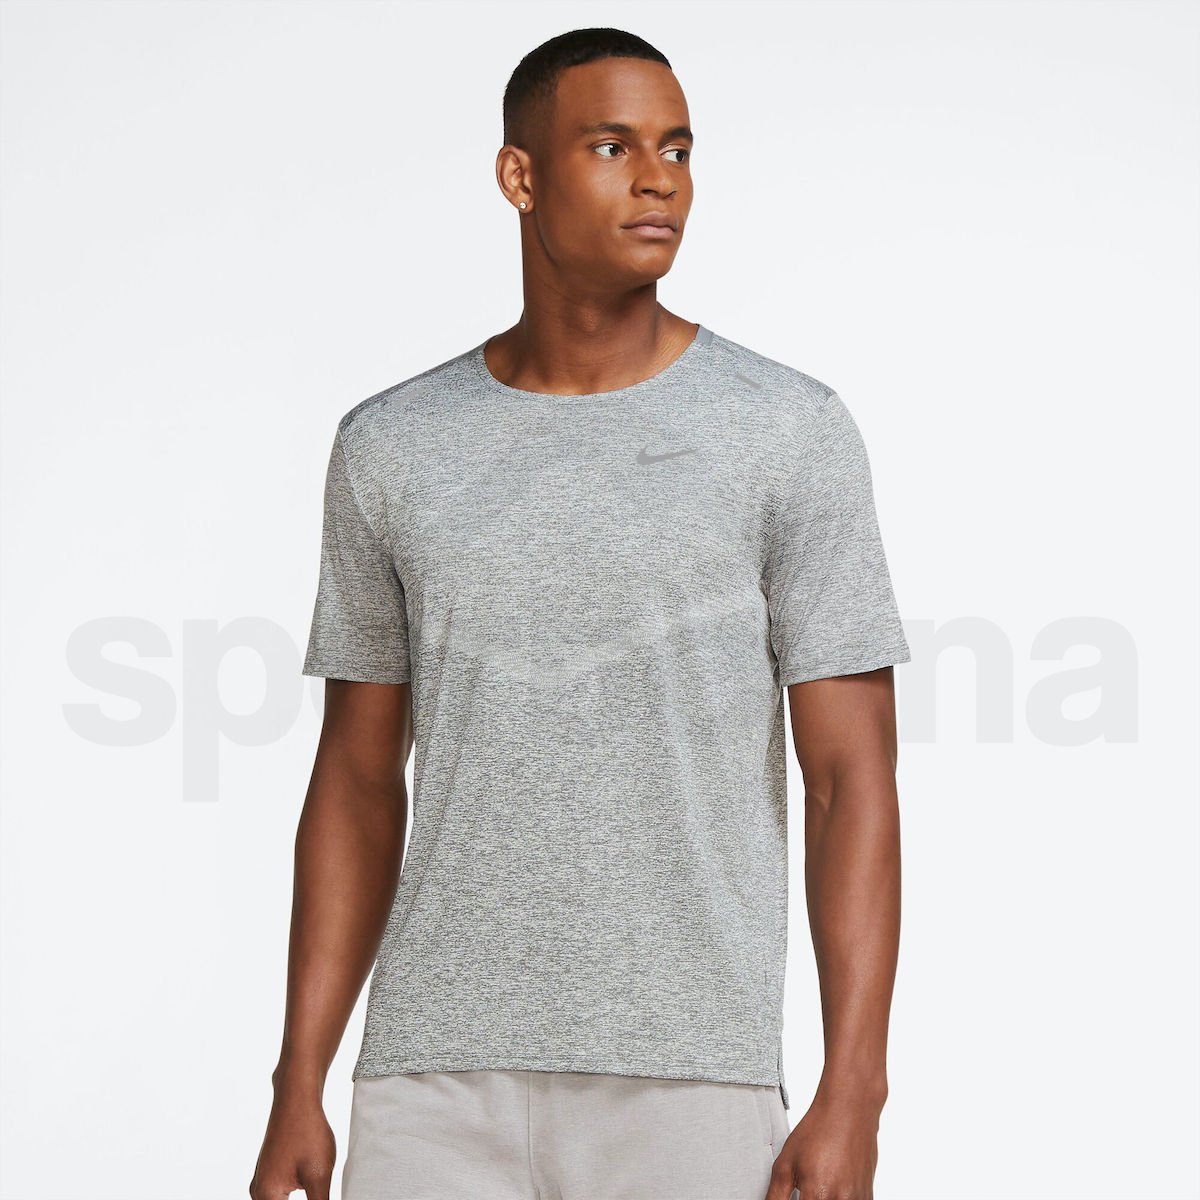 Tričko Nike Dri-Fit Rise 365 M - šedá